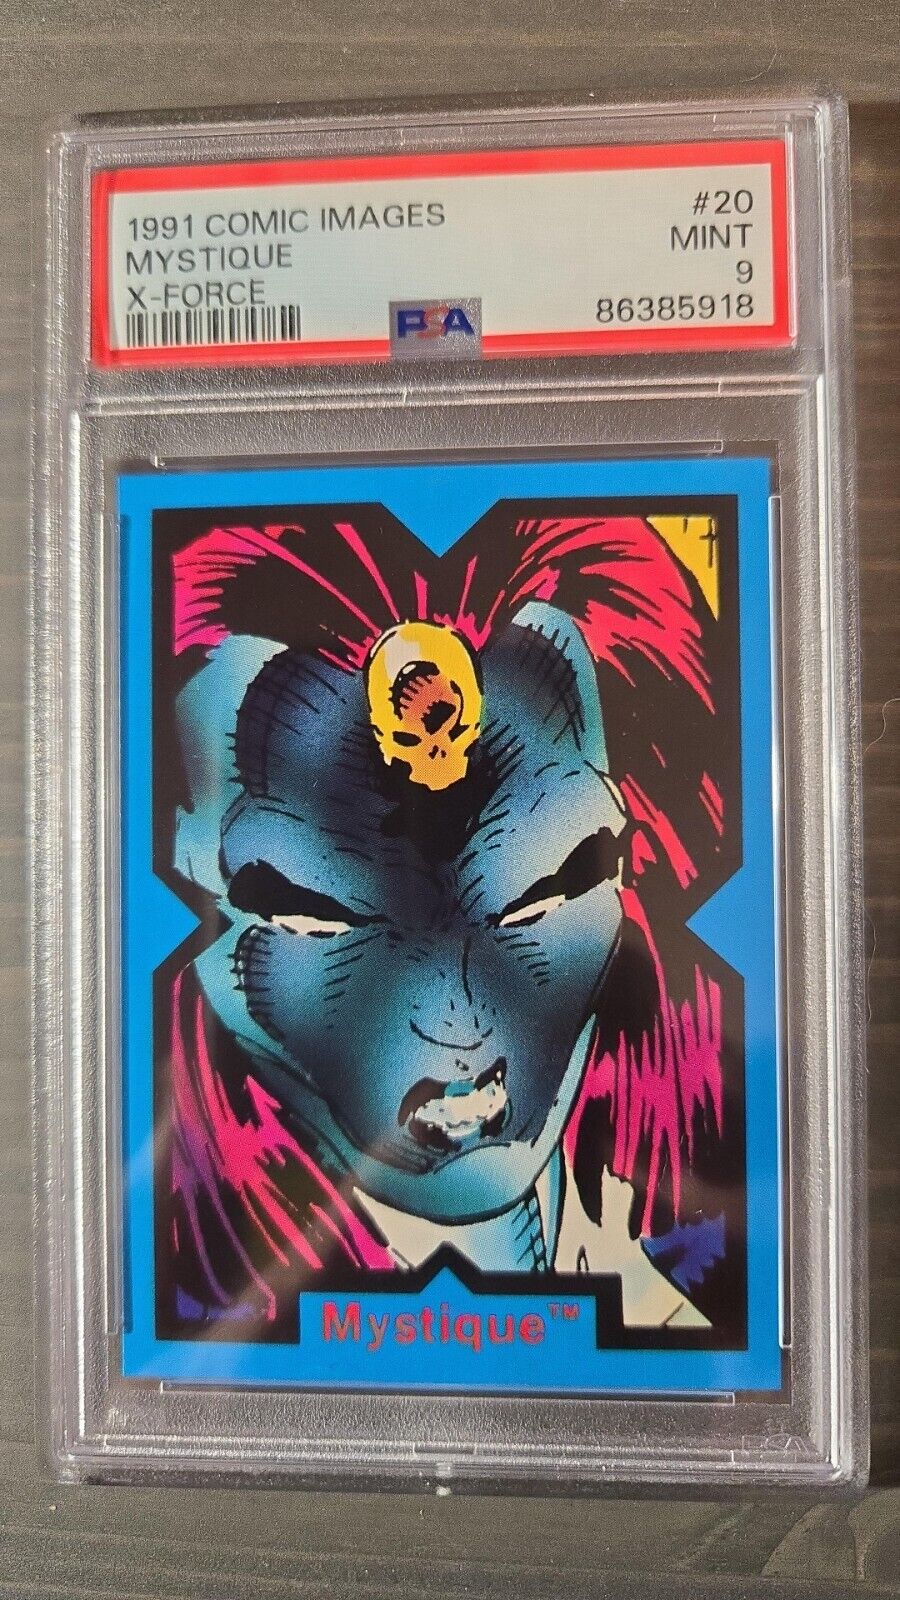 1991 Comic Images X-Force #20 Mystique ROOKIE CARD PSA 9